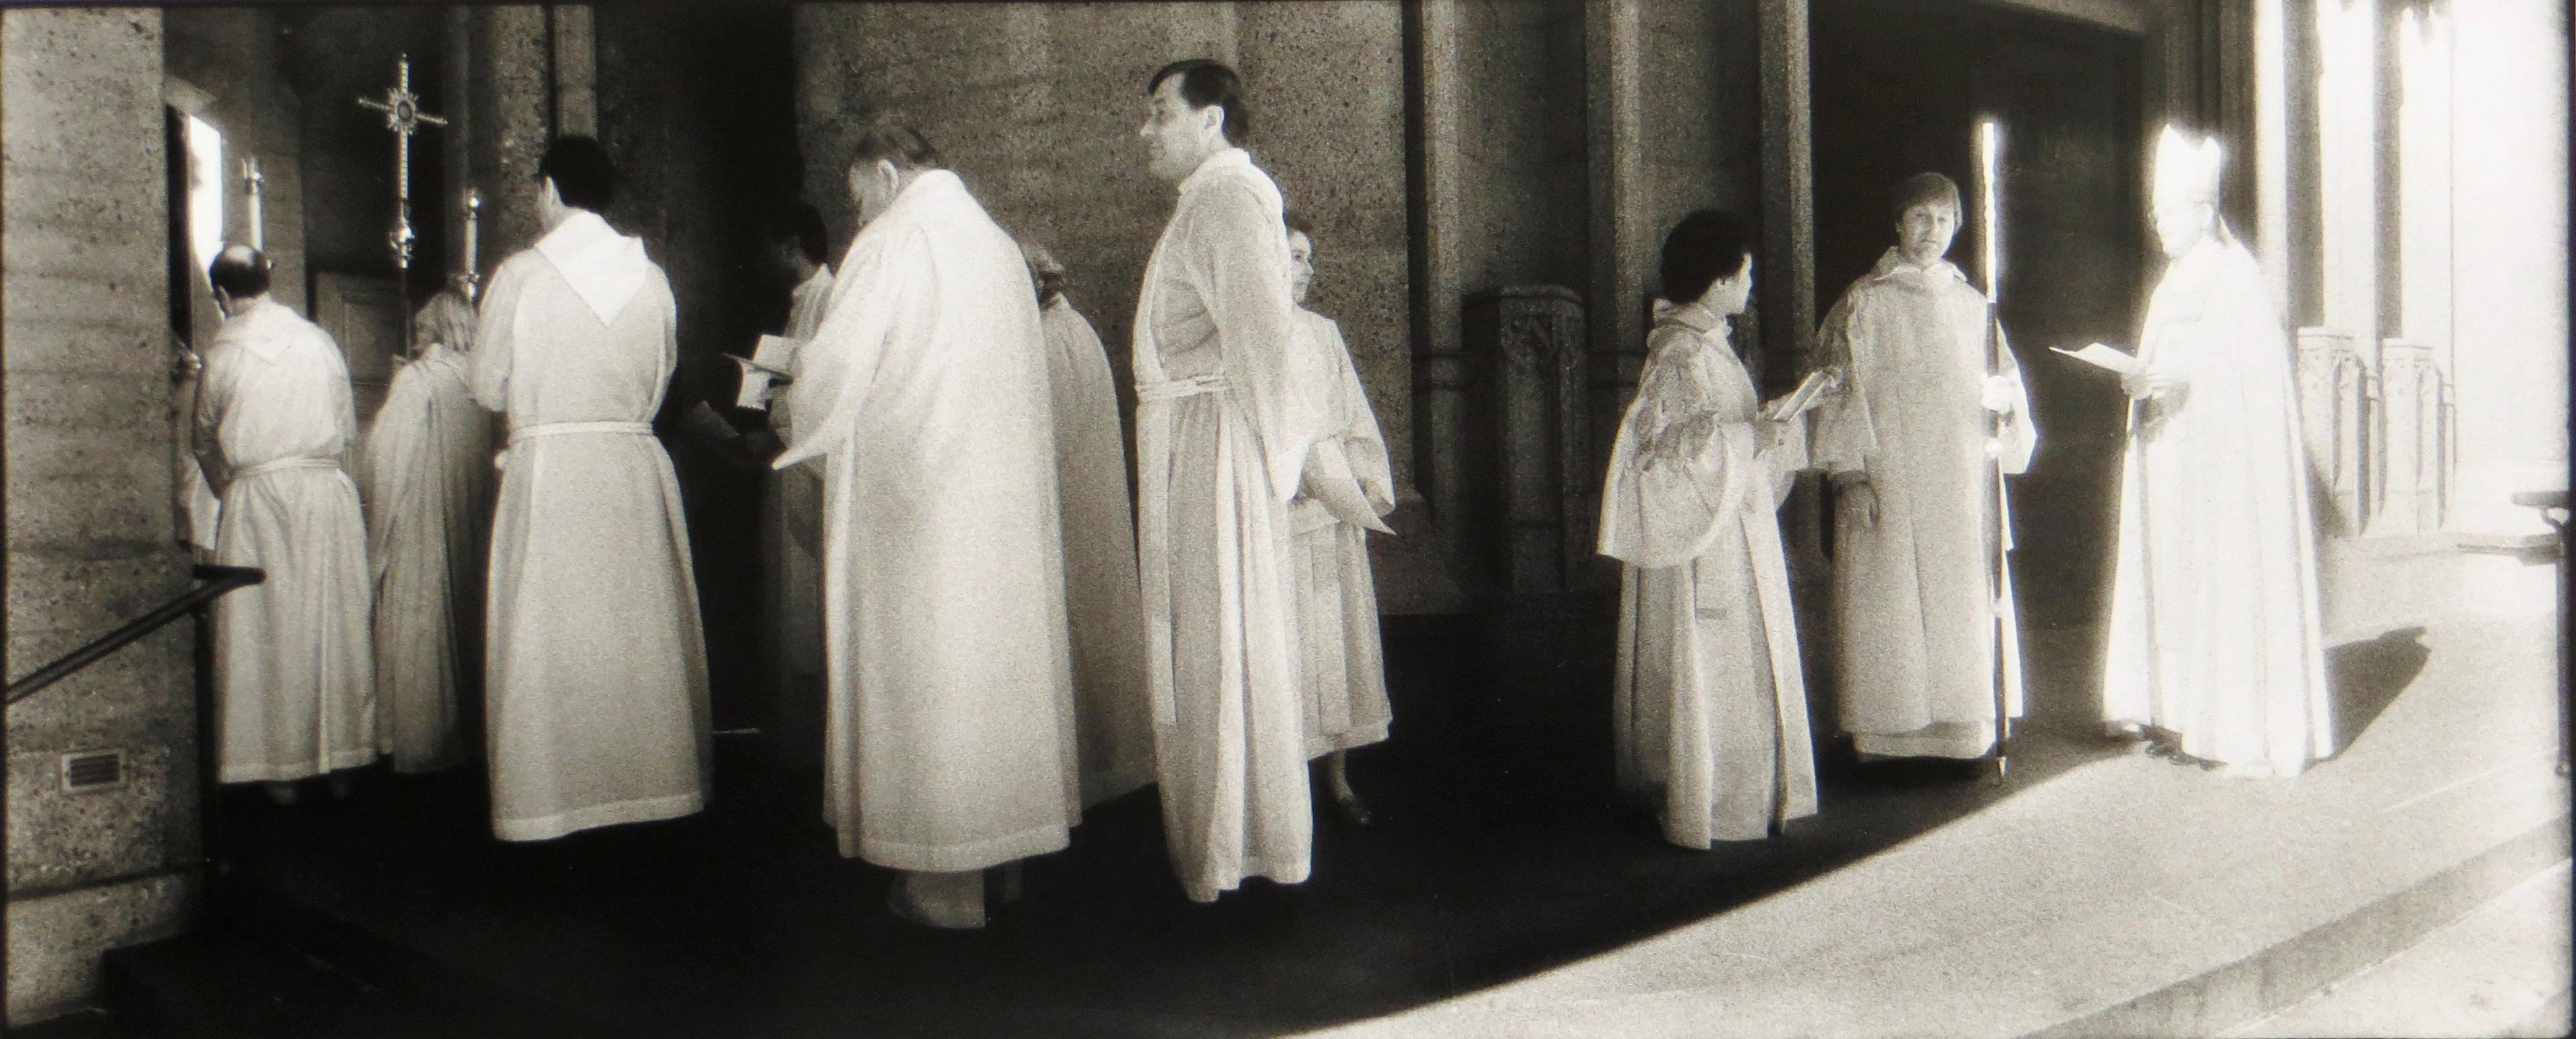 Ecumenisches Service, Grace Cathedral, San Francisco (Schwarz), Black and White Photograph, von Geir Jordahl